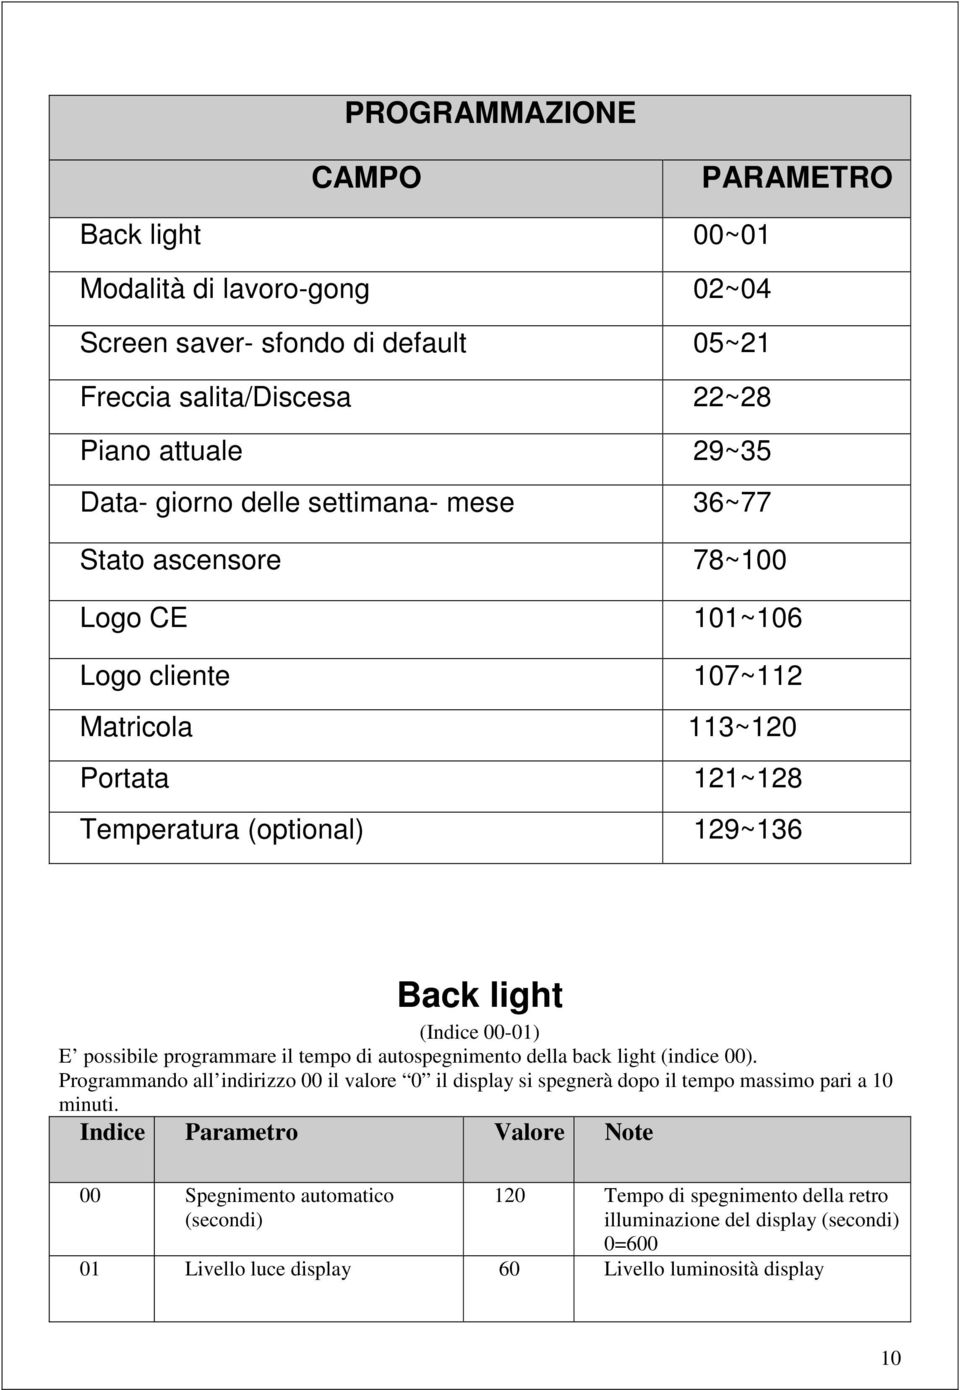 E possibile programmare il tempo di autospegnimento della back light (indice 00).